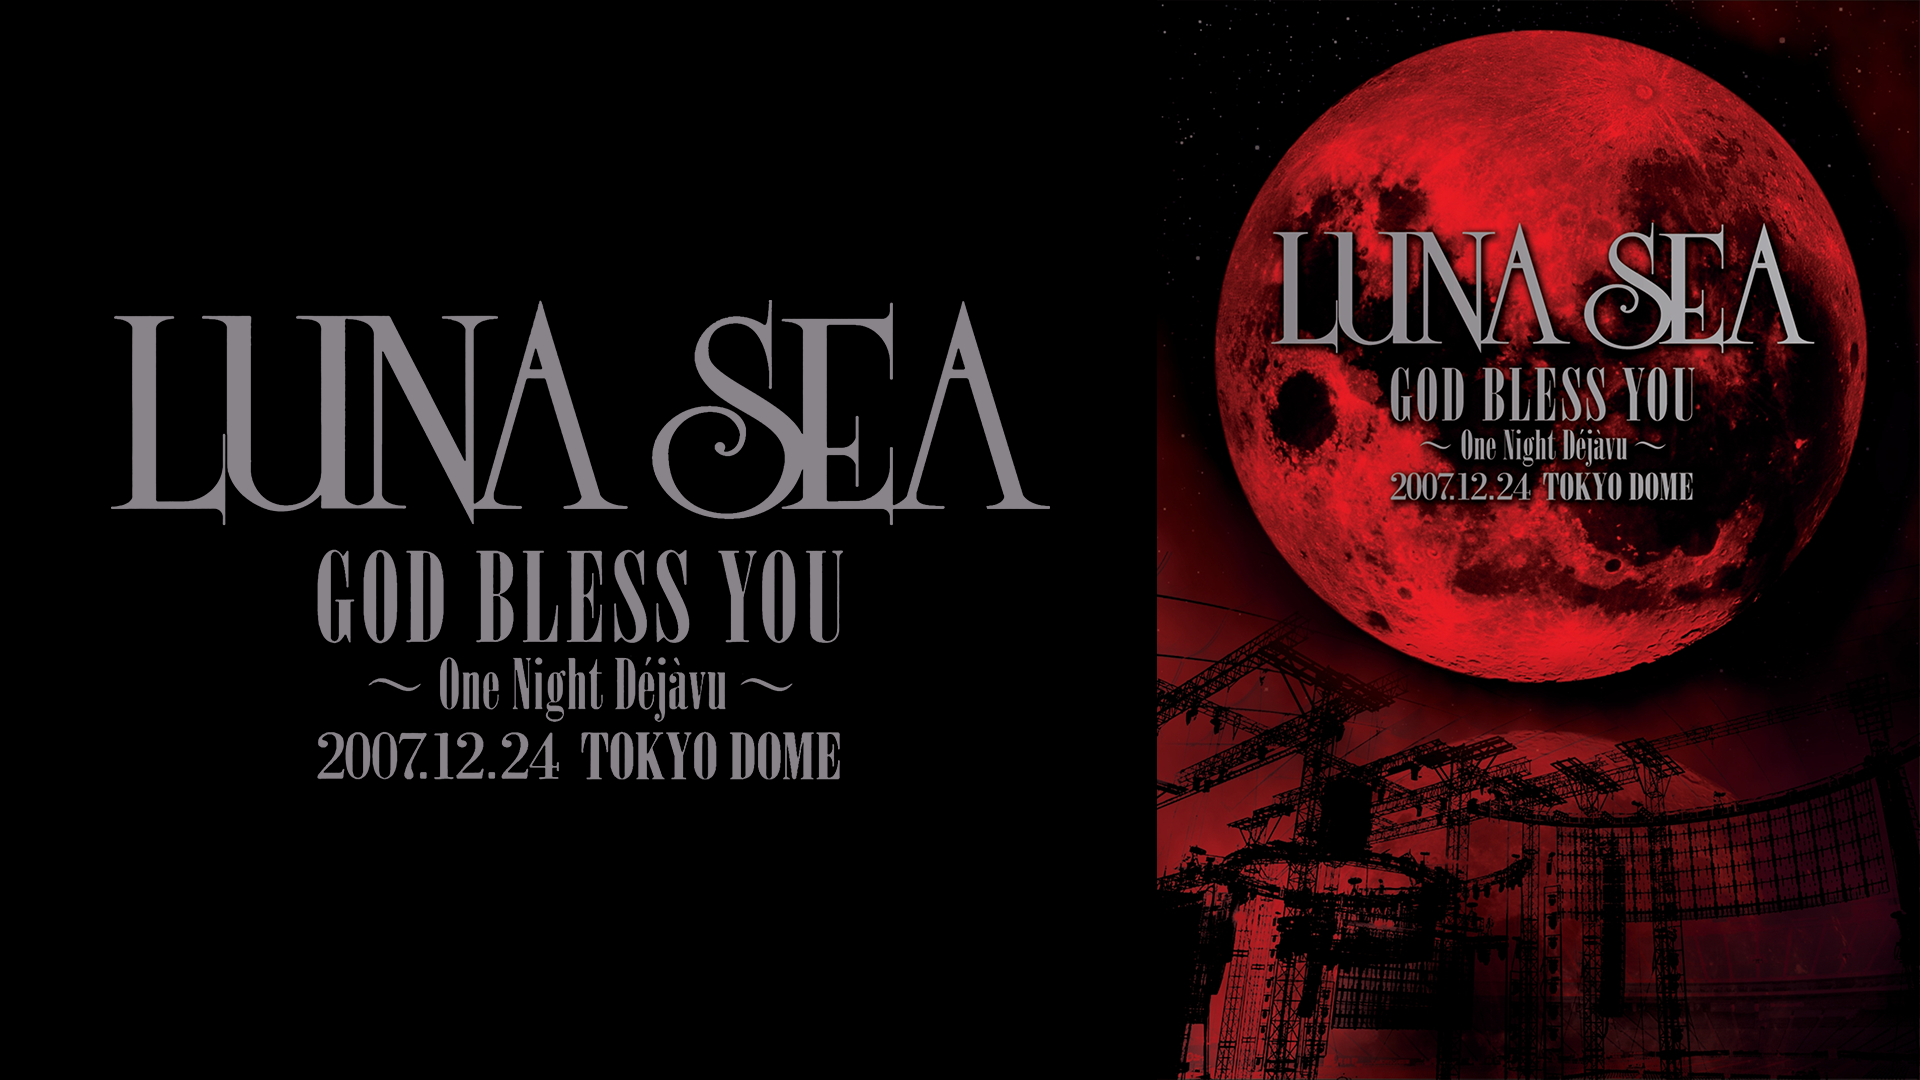 LUNA SEA GOD BLESS YOU ～One Night Dejavu～ 2007.12.24 TOKYO DOME 